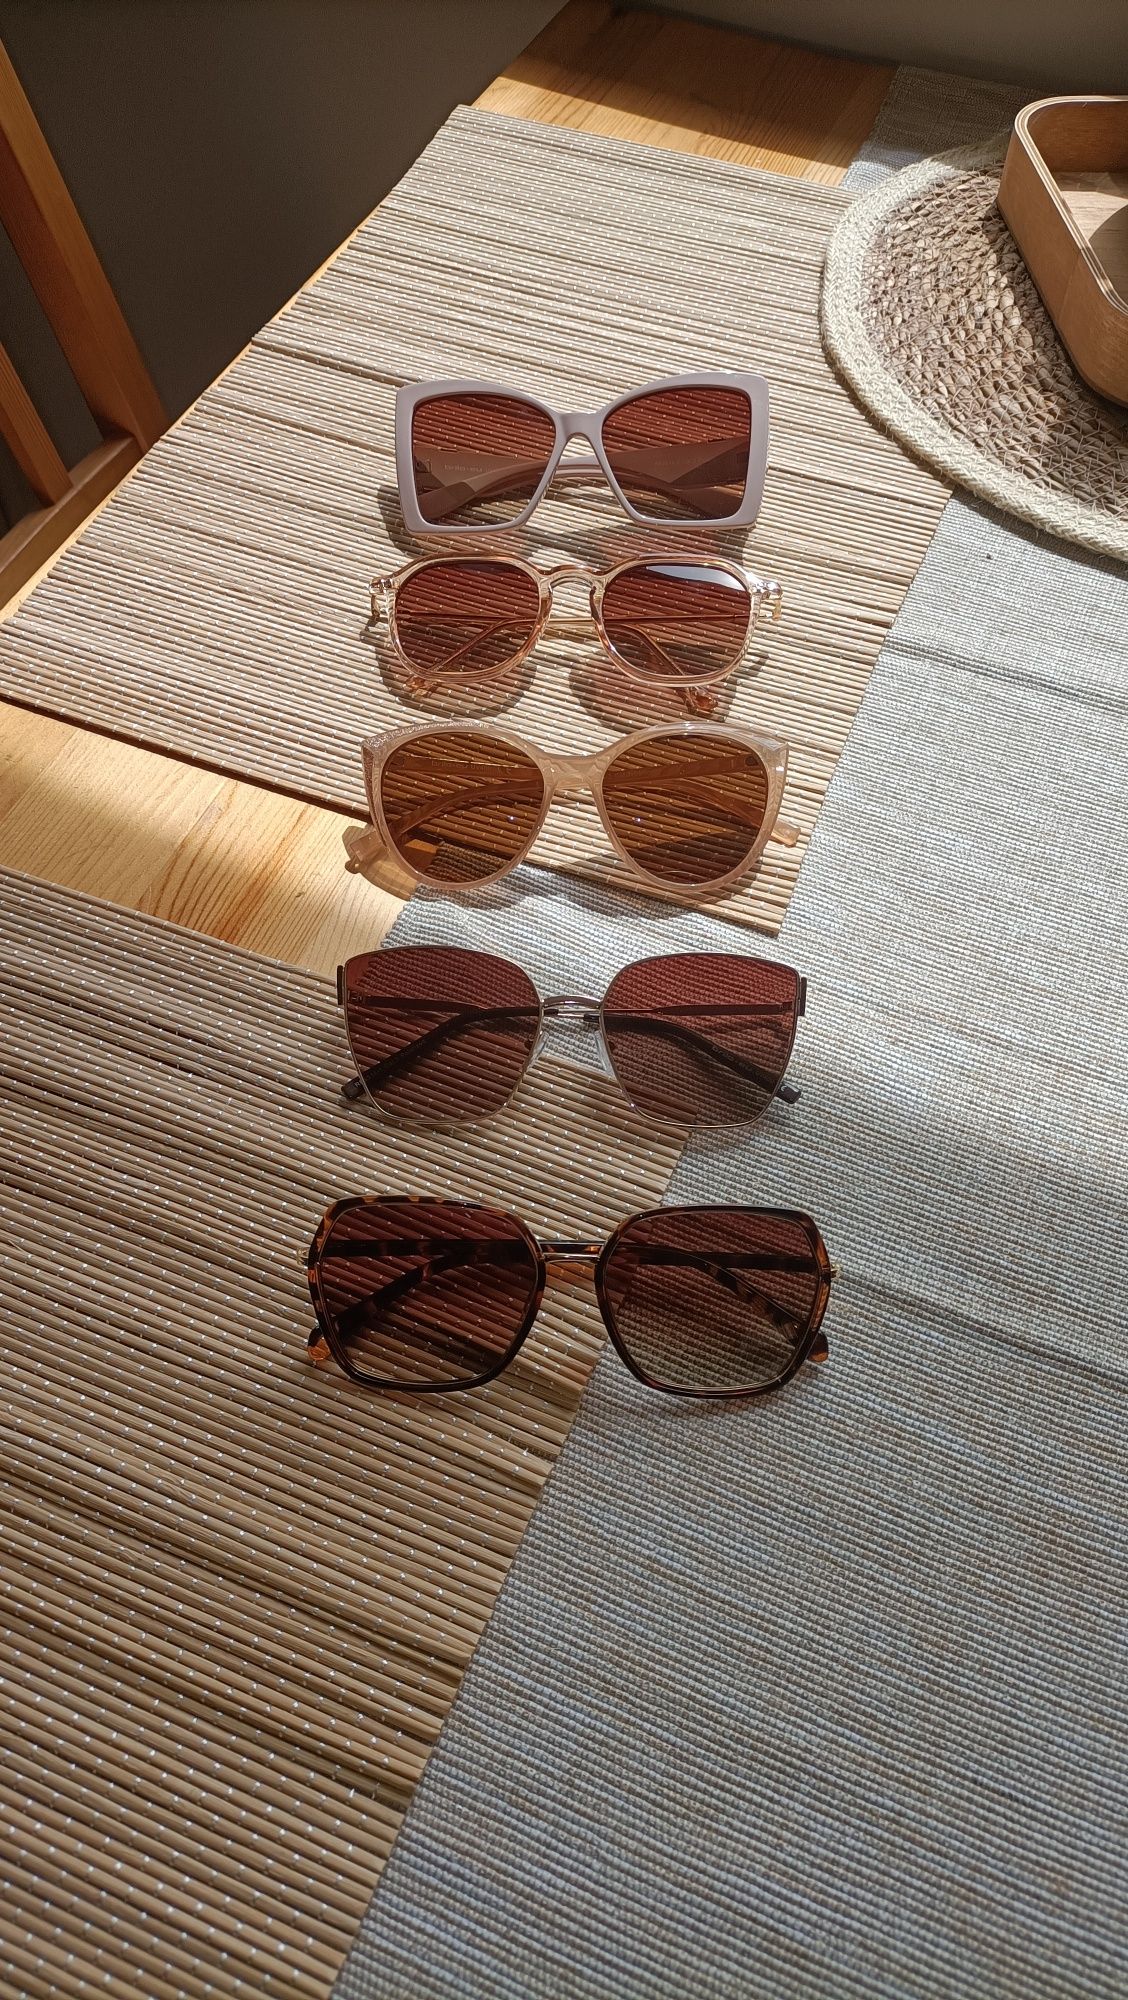 Okulary przeciw słoneczne cena za sztukę  20 zł za wszystkie 80